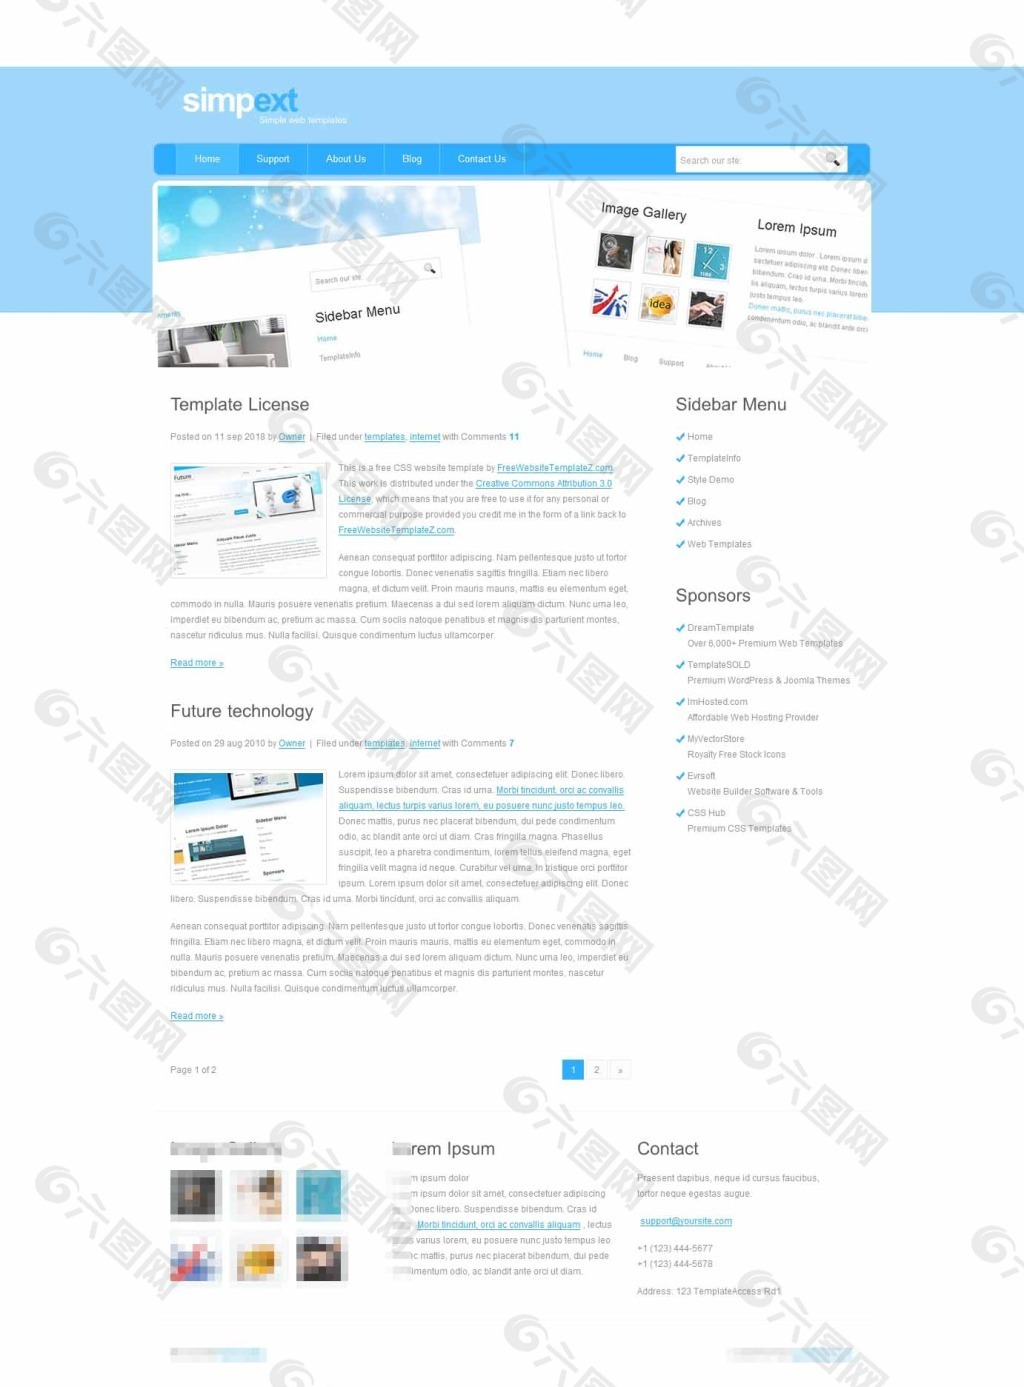 蓝色大气的企业网站模板